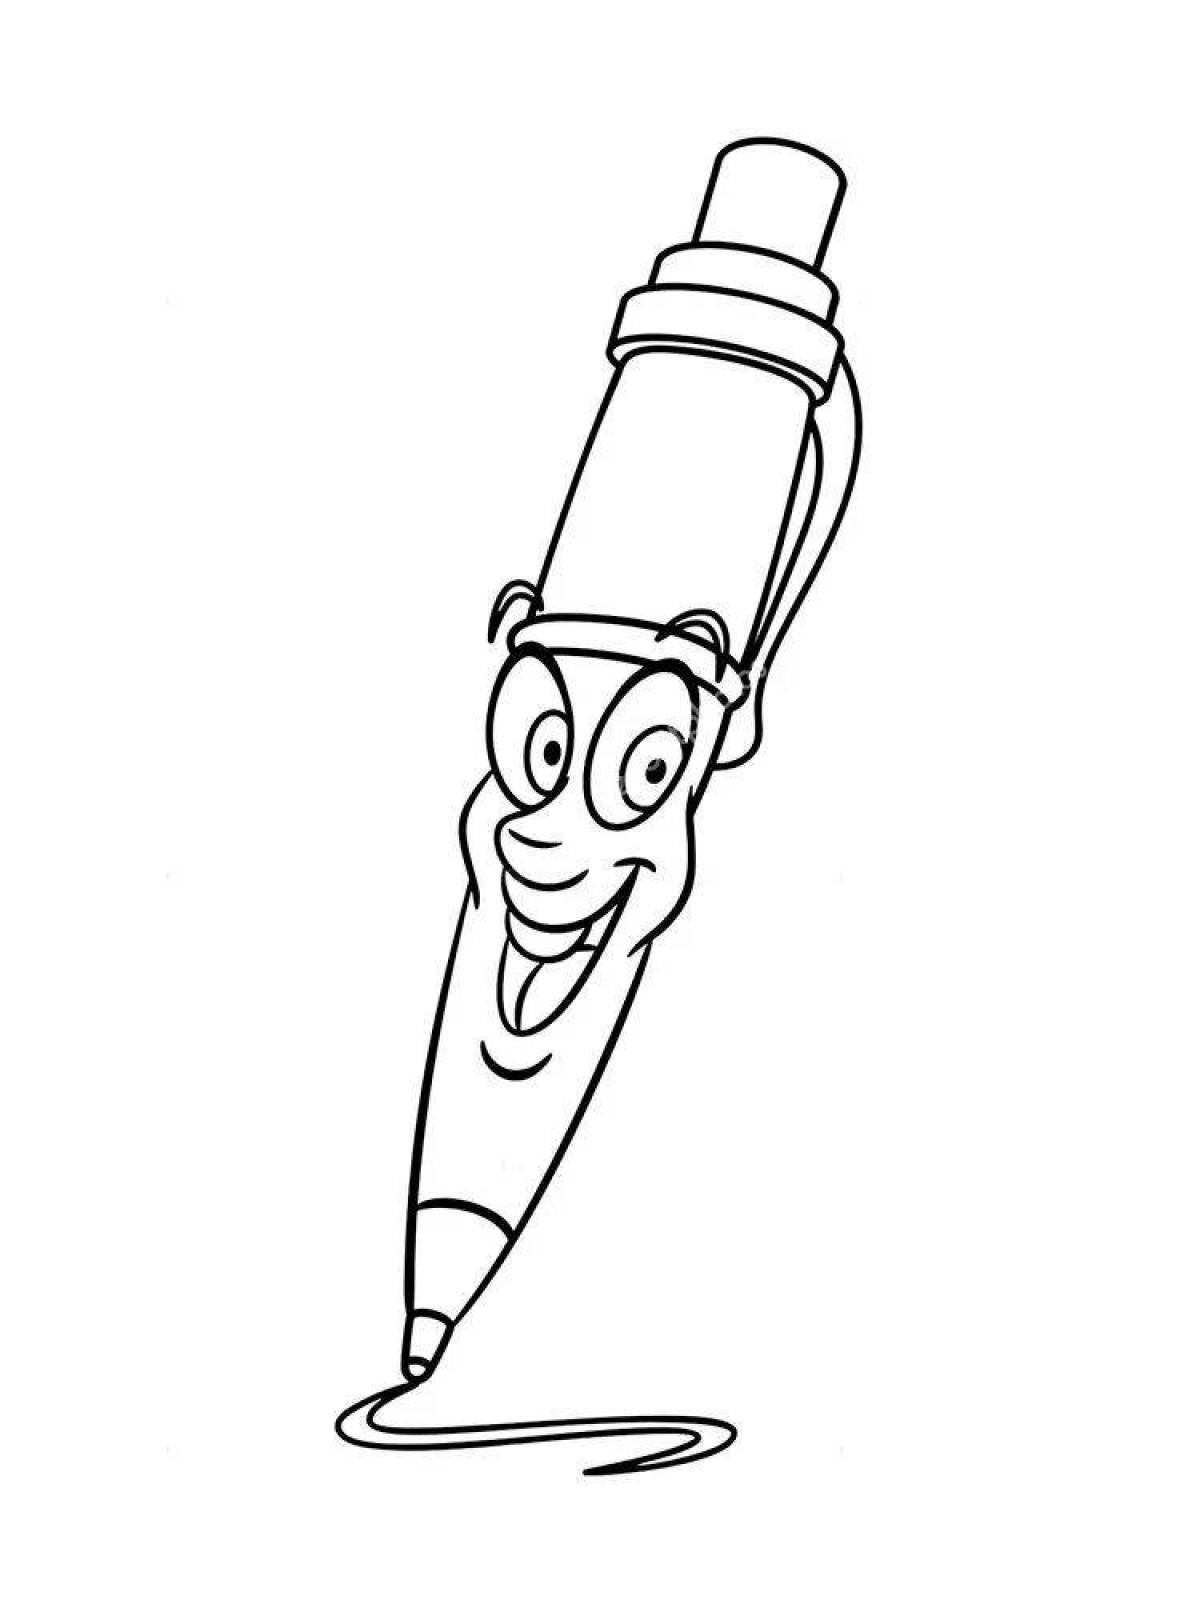 Красочная страница раскраски ручкой для детей